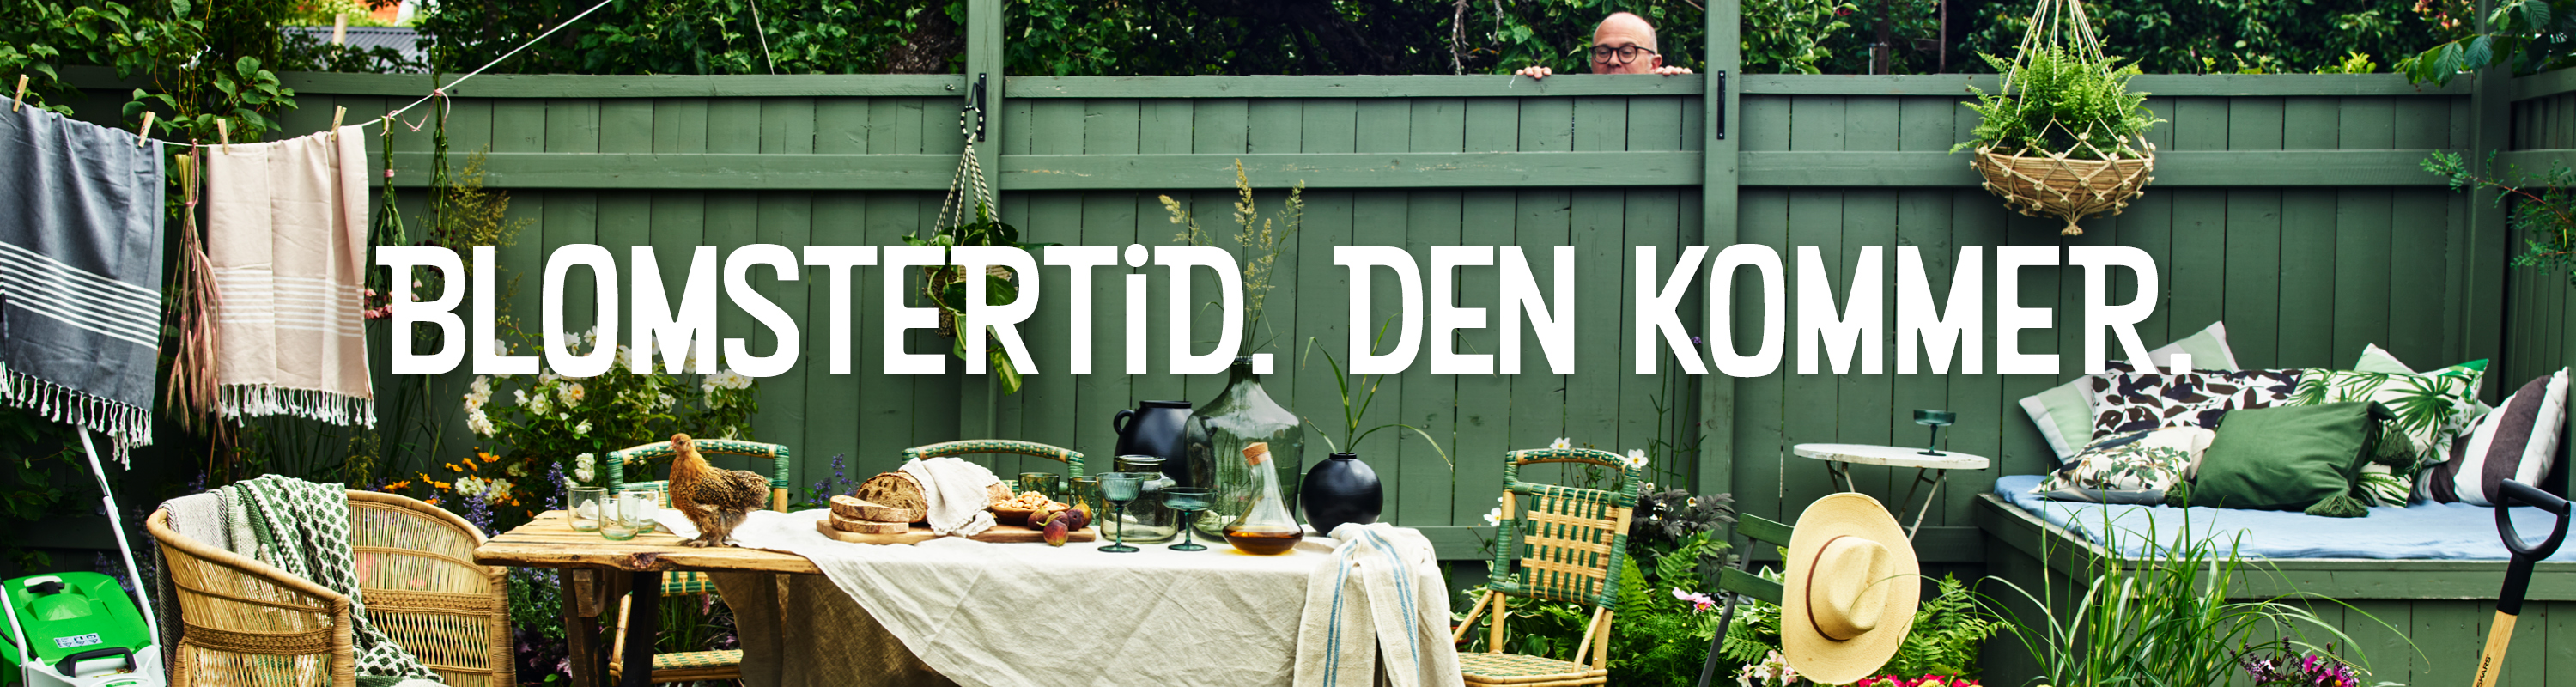 Nordiska trädgårdar - ett grönt staket i bakgrunden, framför syns ett dukat bord, en tvättlina och några stolar.